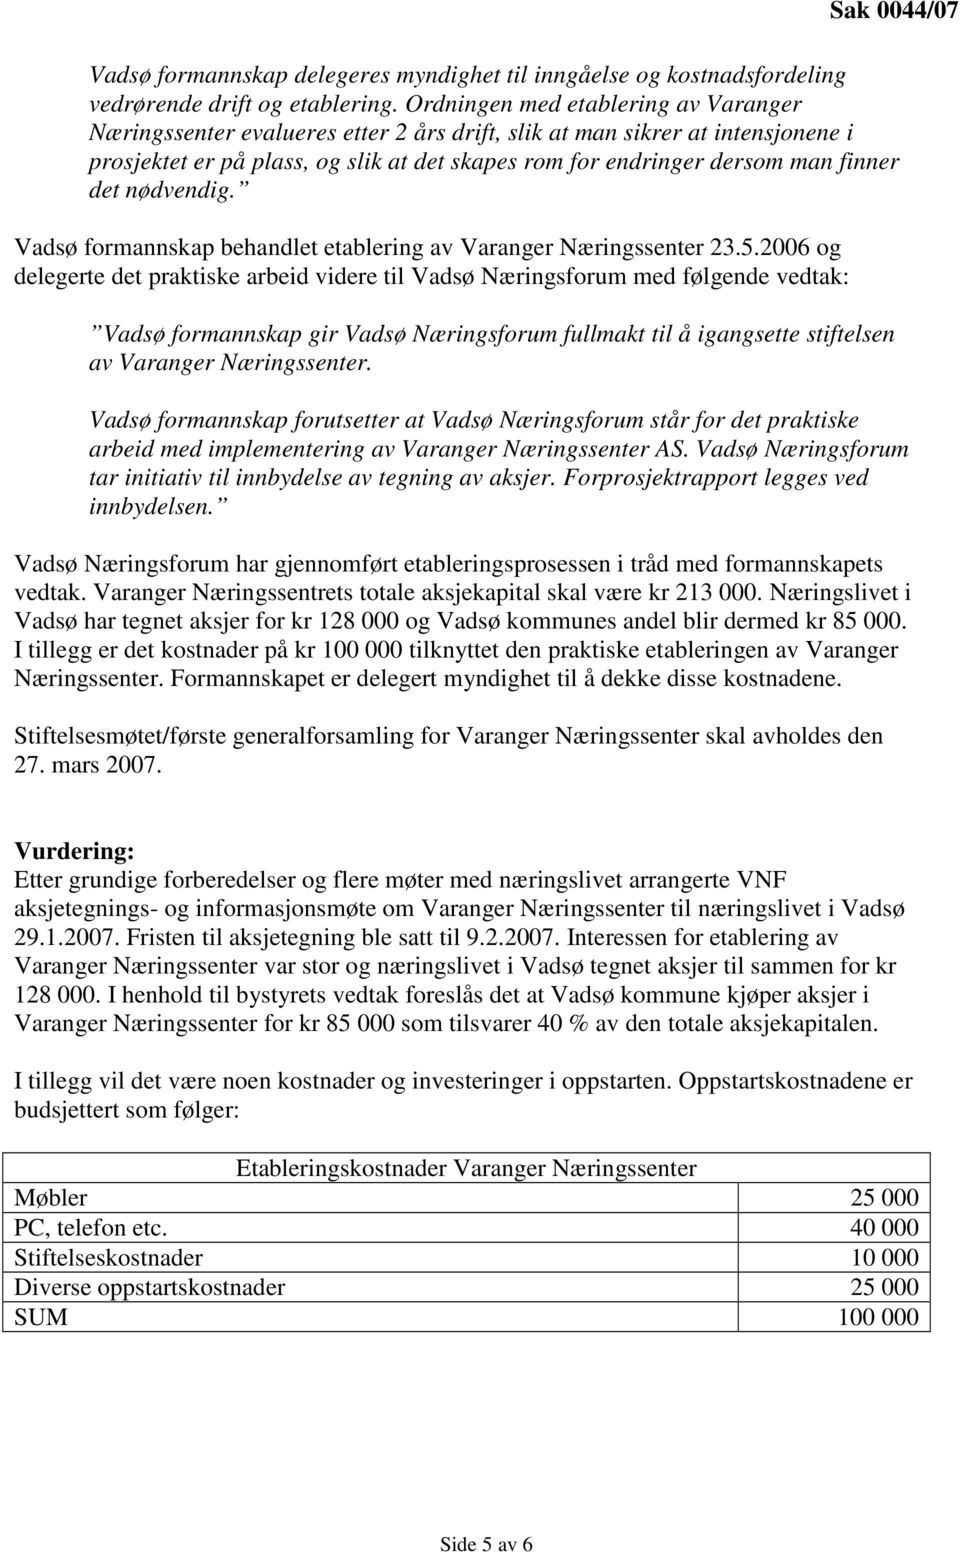 det nødvendig. Vadsø formannskap behandlet etablering av Varanger Næringssenter 23.5.